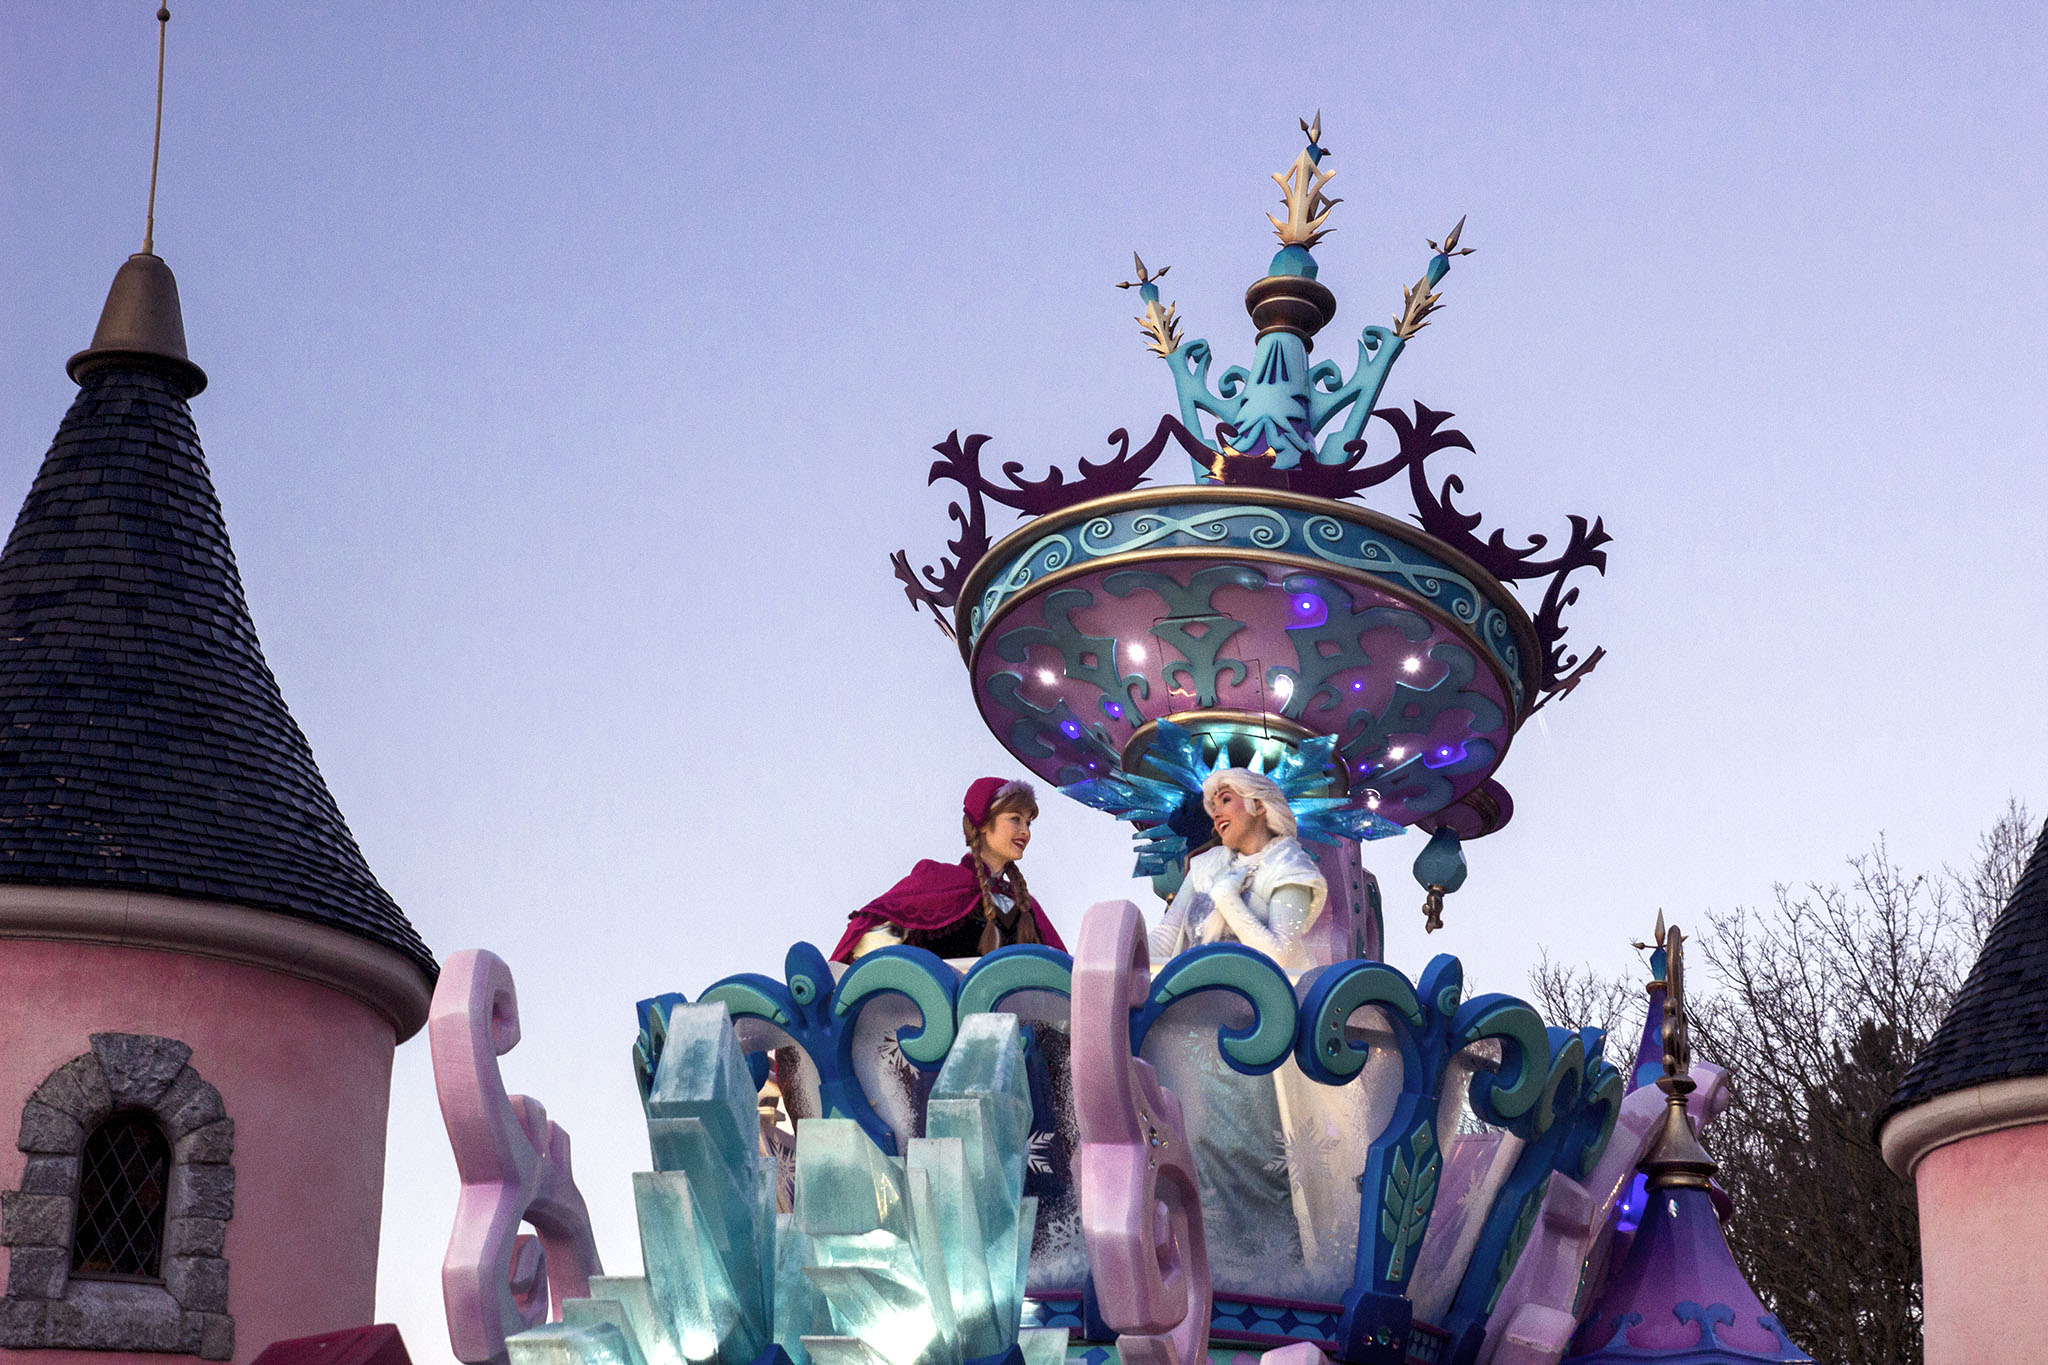 La parade de Disneyland : Anna et Elsa